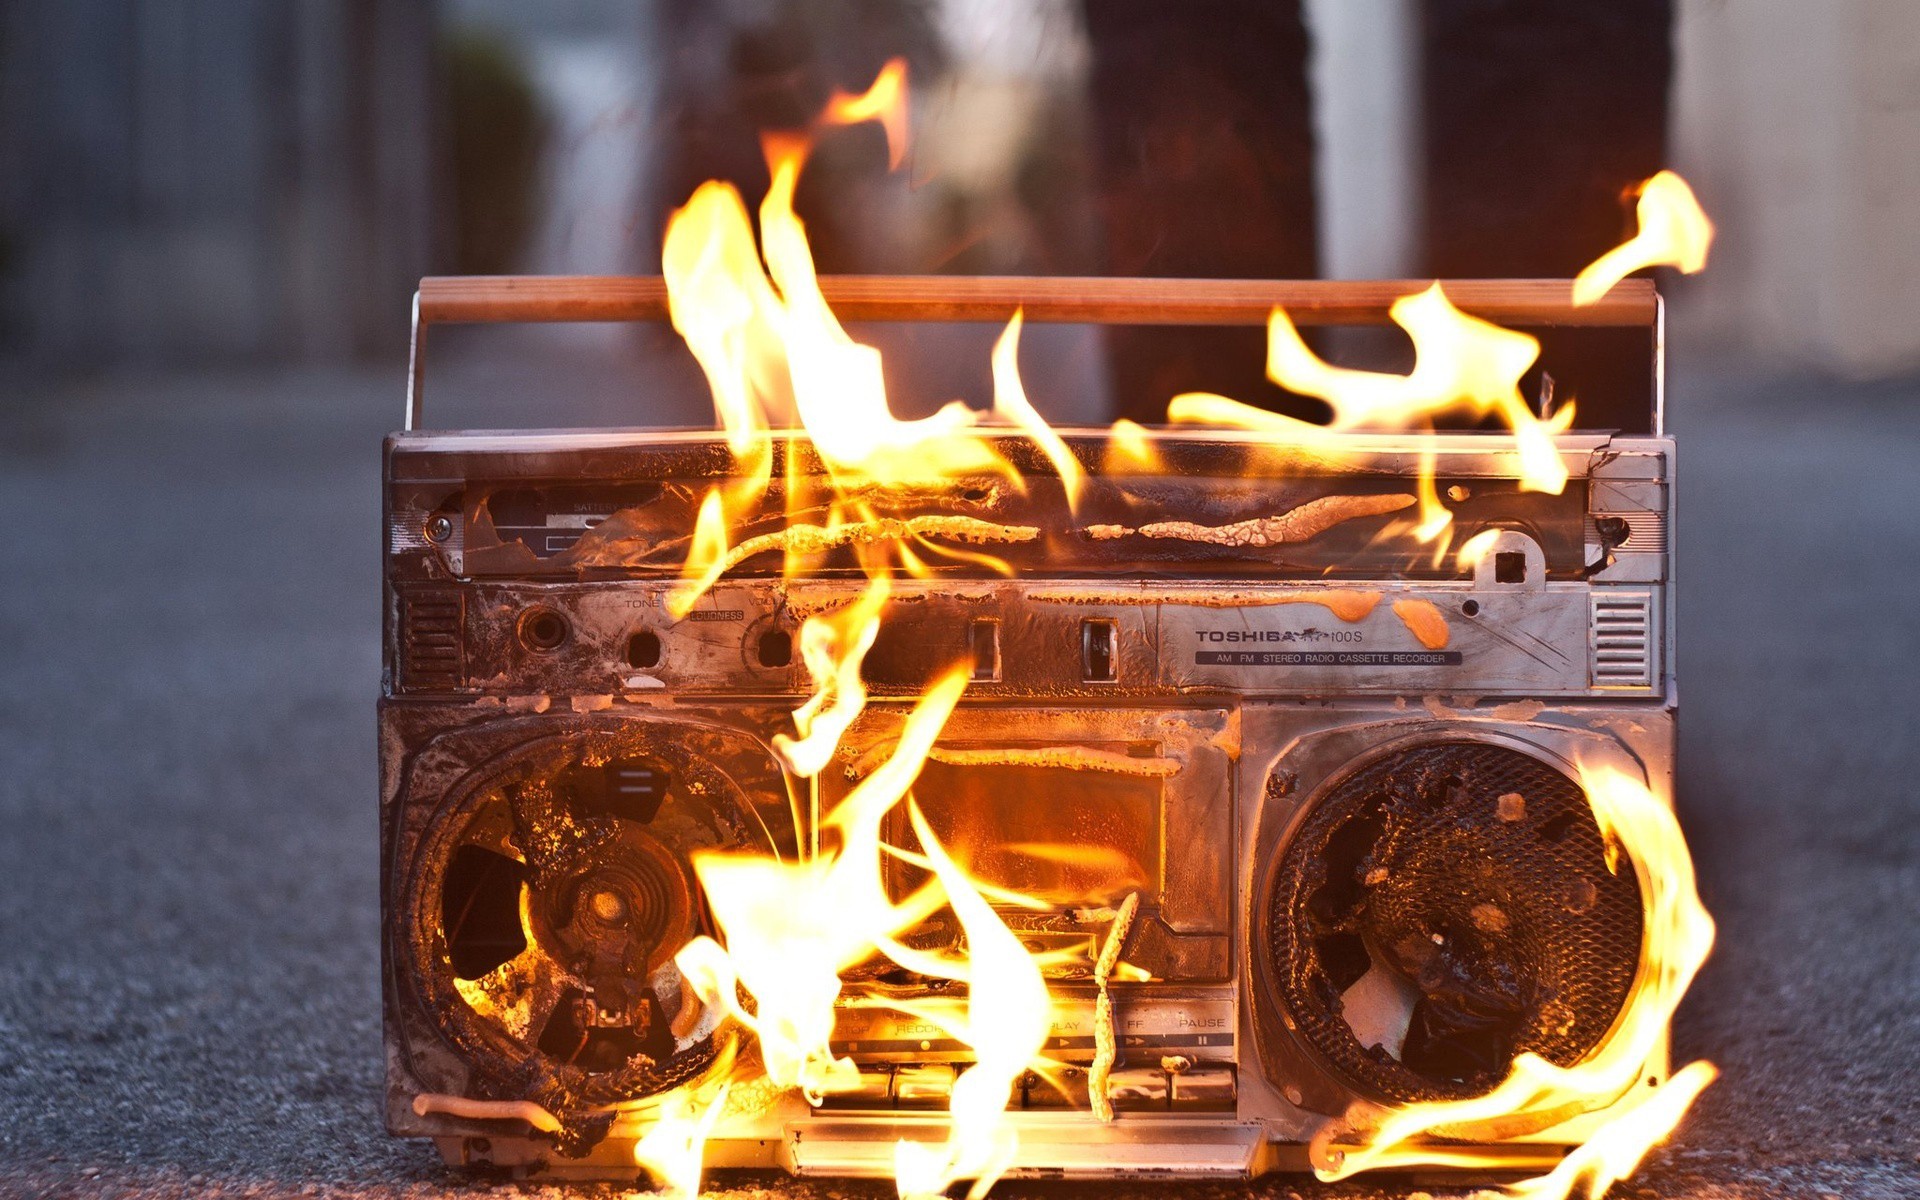 General 1920x1200 fire music stereos melting ground broken boombox asphalt closeup